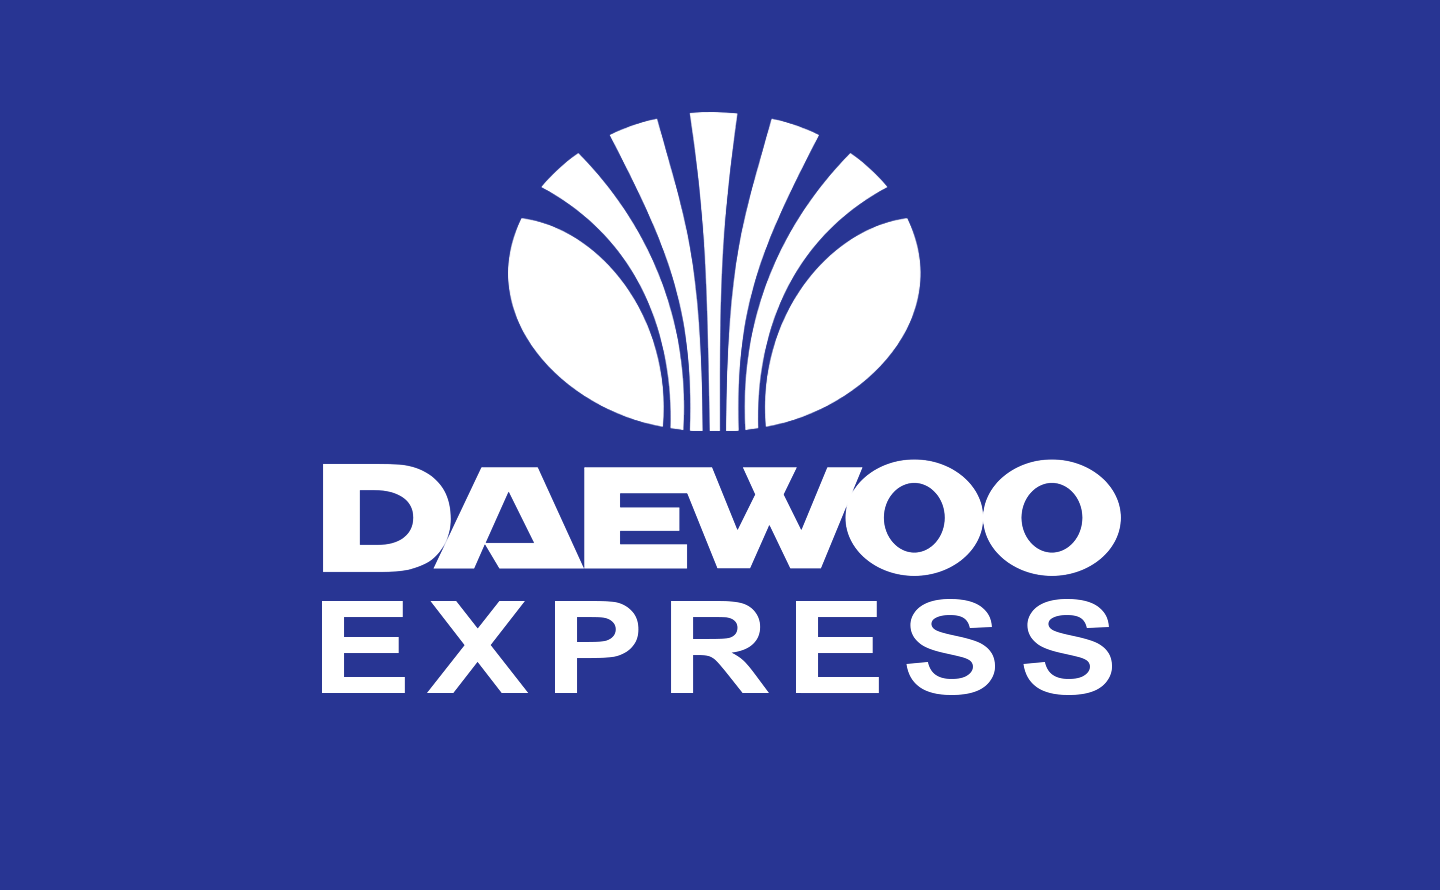 Old Daewoo Logo - Daewoo Express